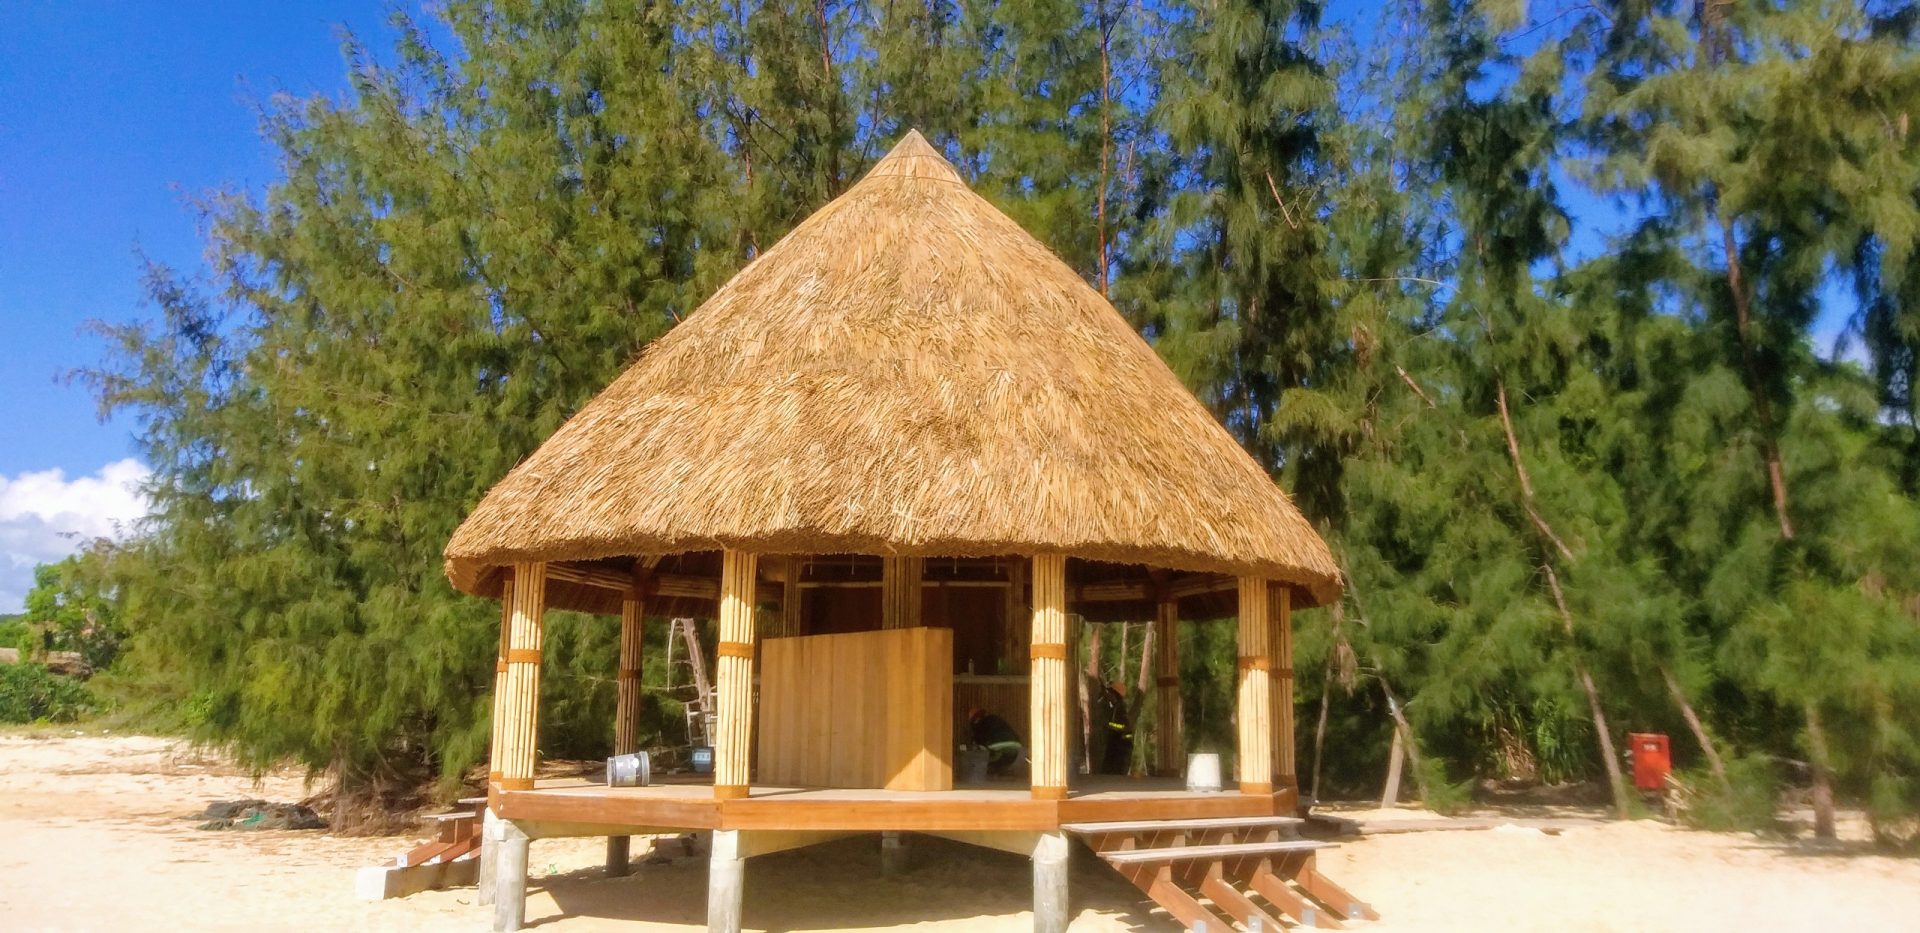 Cách Xây Nhà Tre Đẹp Và Nhanh Nhất • Build bamboo house in the forest -  Part 5 - YouTube